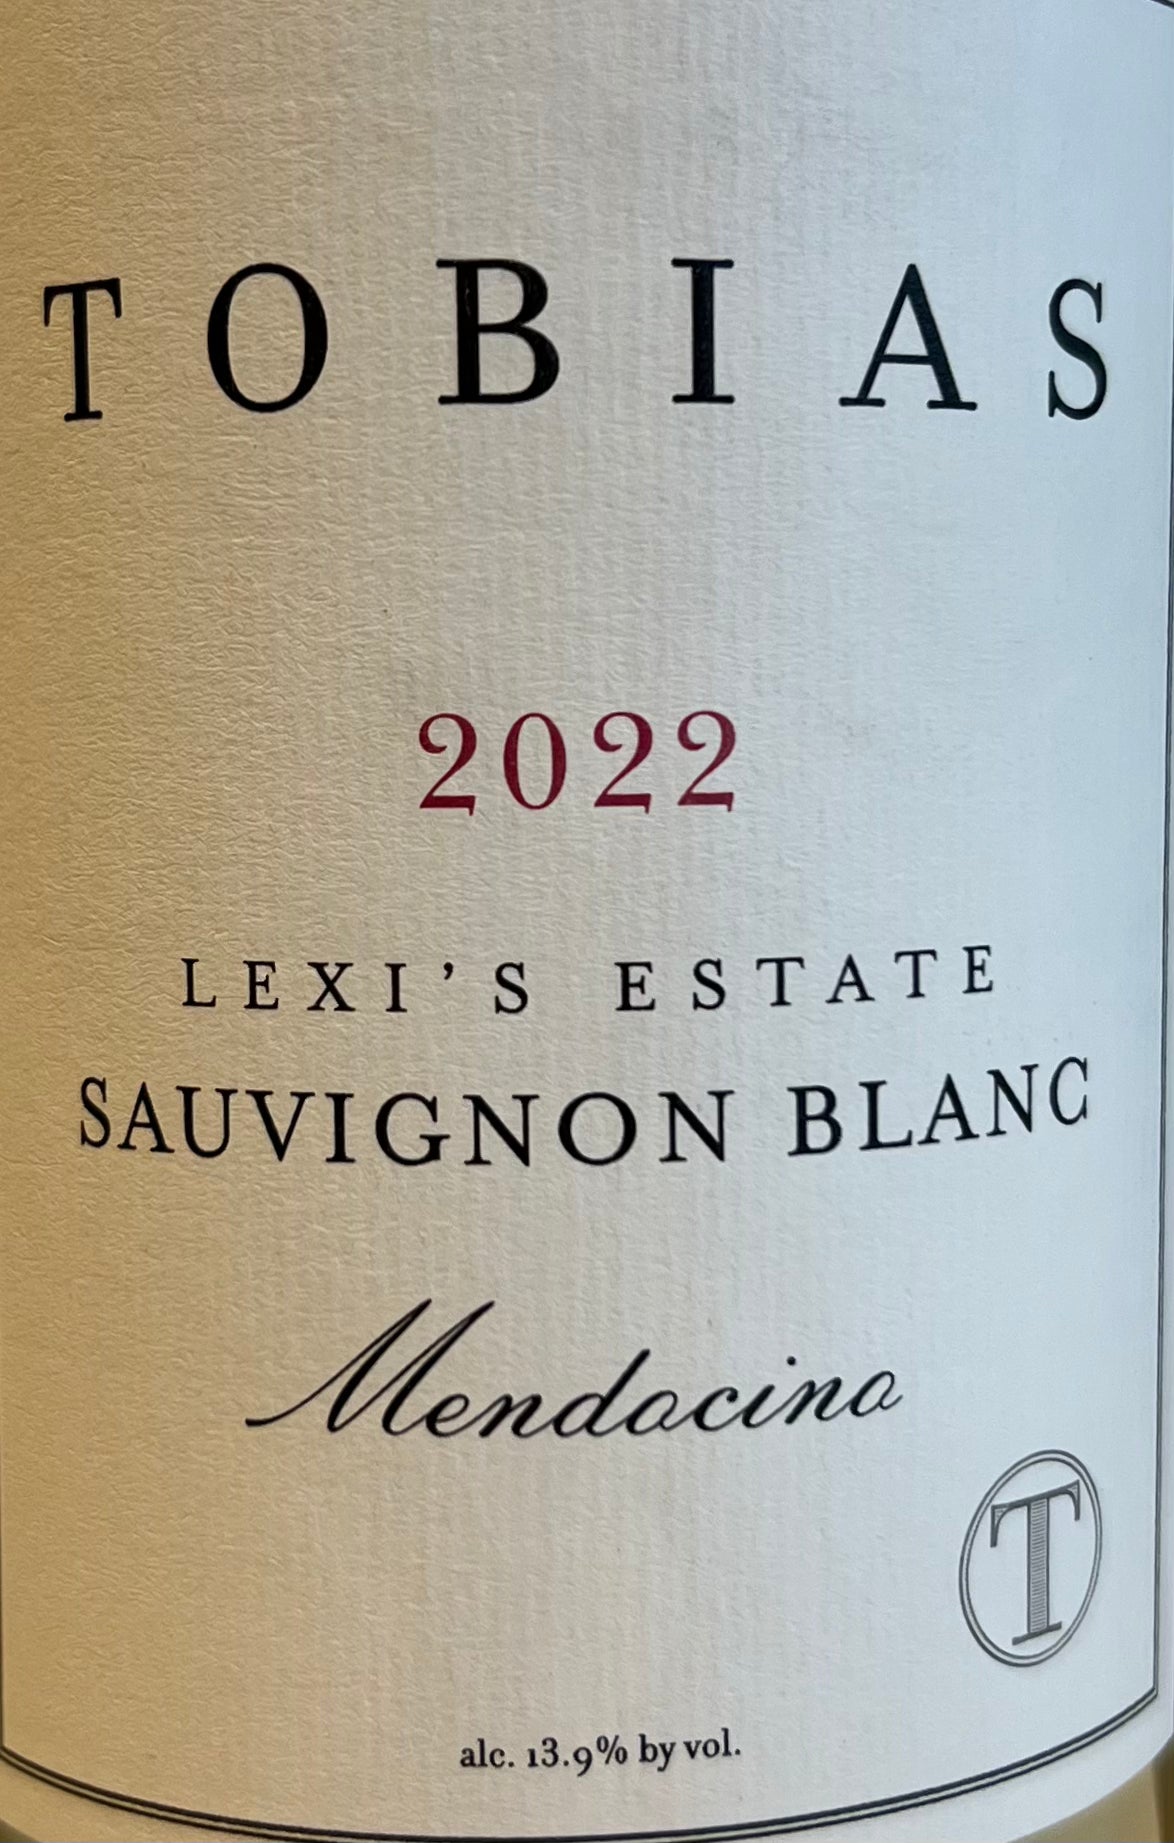 Tobias 'Lexi's Estate' - Sauvignon Blanc